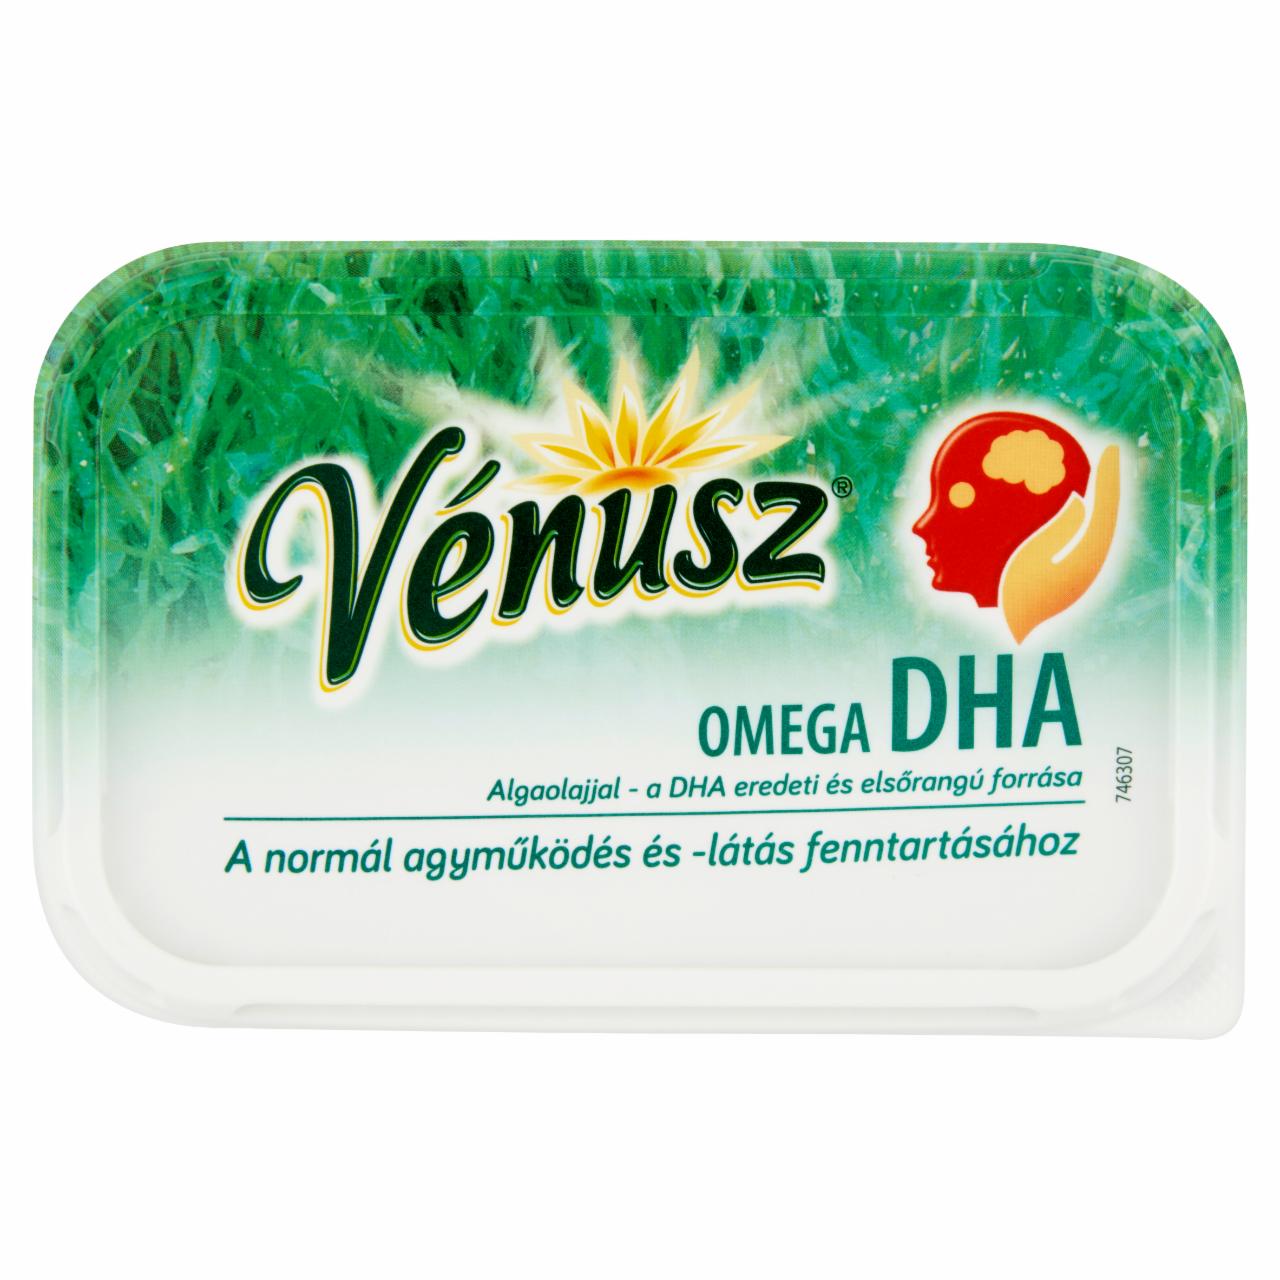 Képek - Vénusz Omega DHA félzsíros margarin 400 g